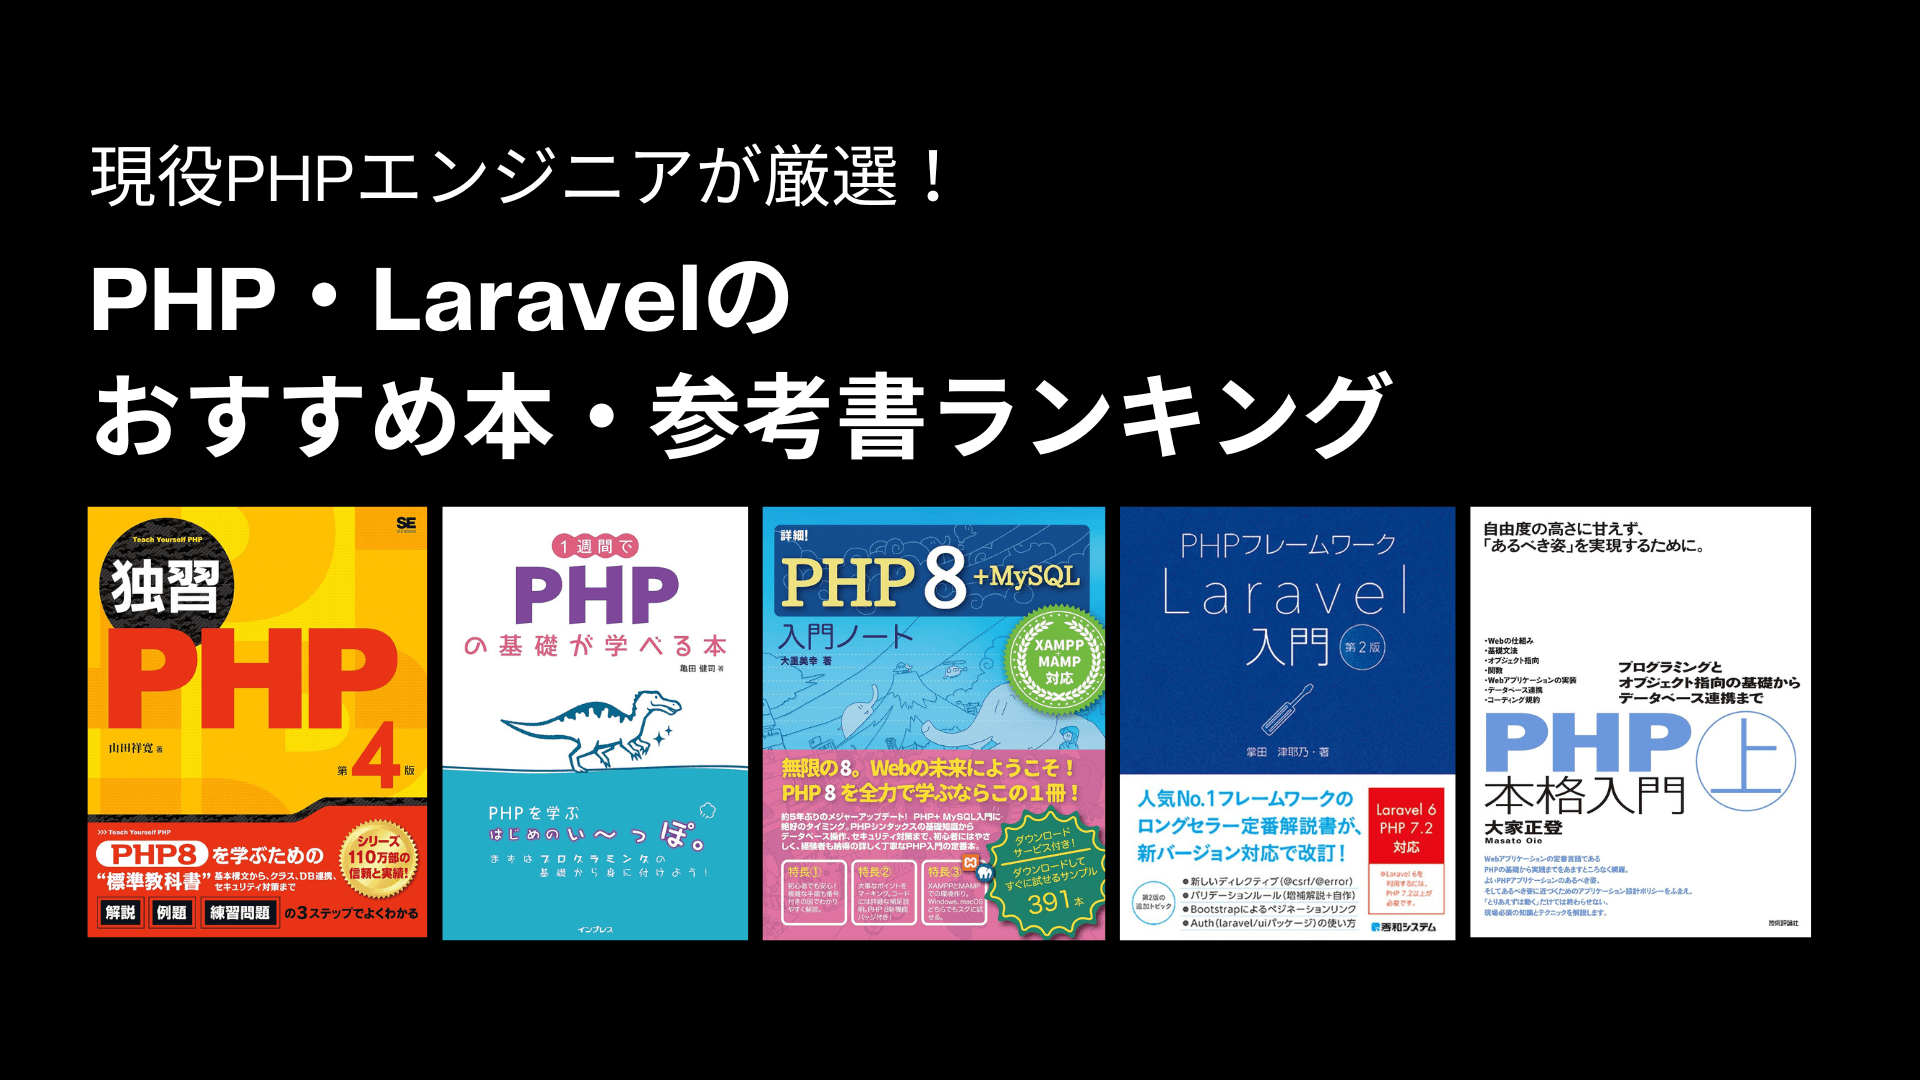 PHP・Laravelのおすすめ本・参考書ランキング